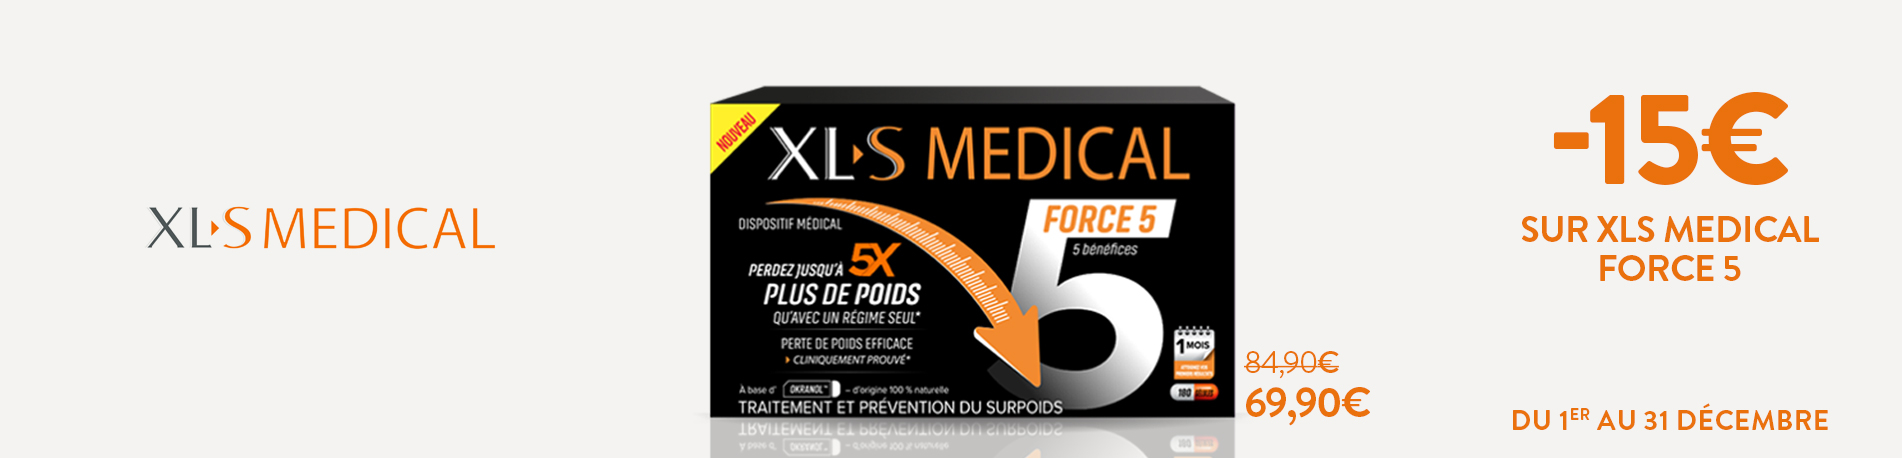 Promotion XLS Médical Force 5